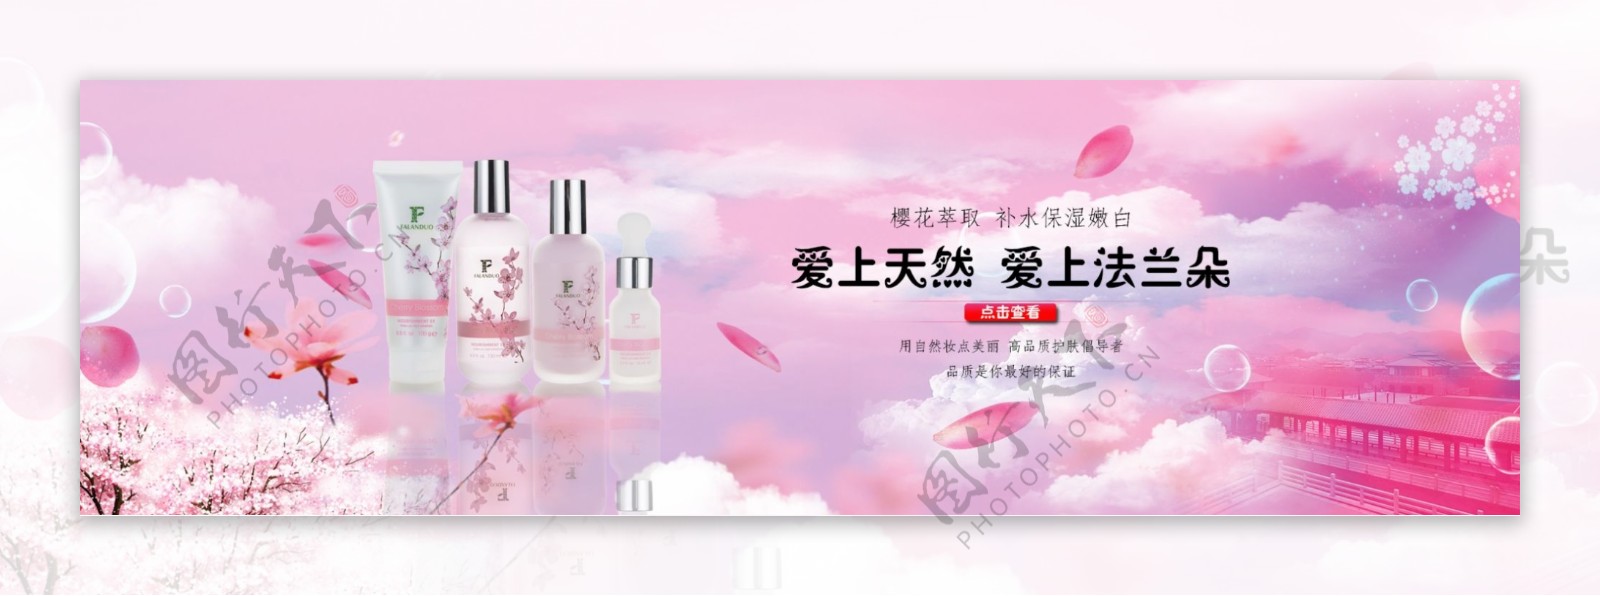 化妆品樱花系列海报